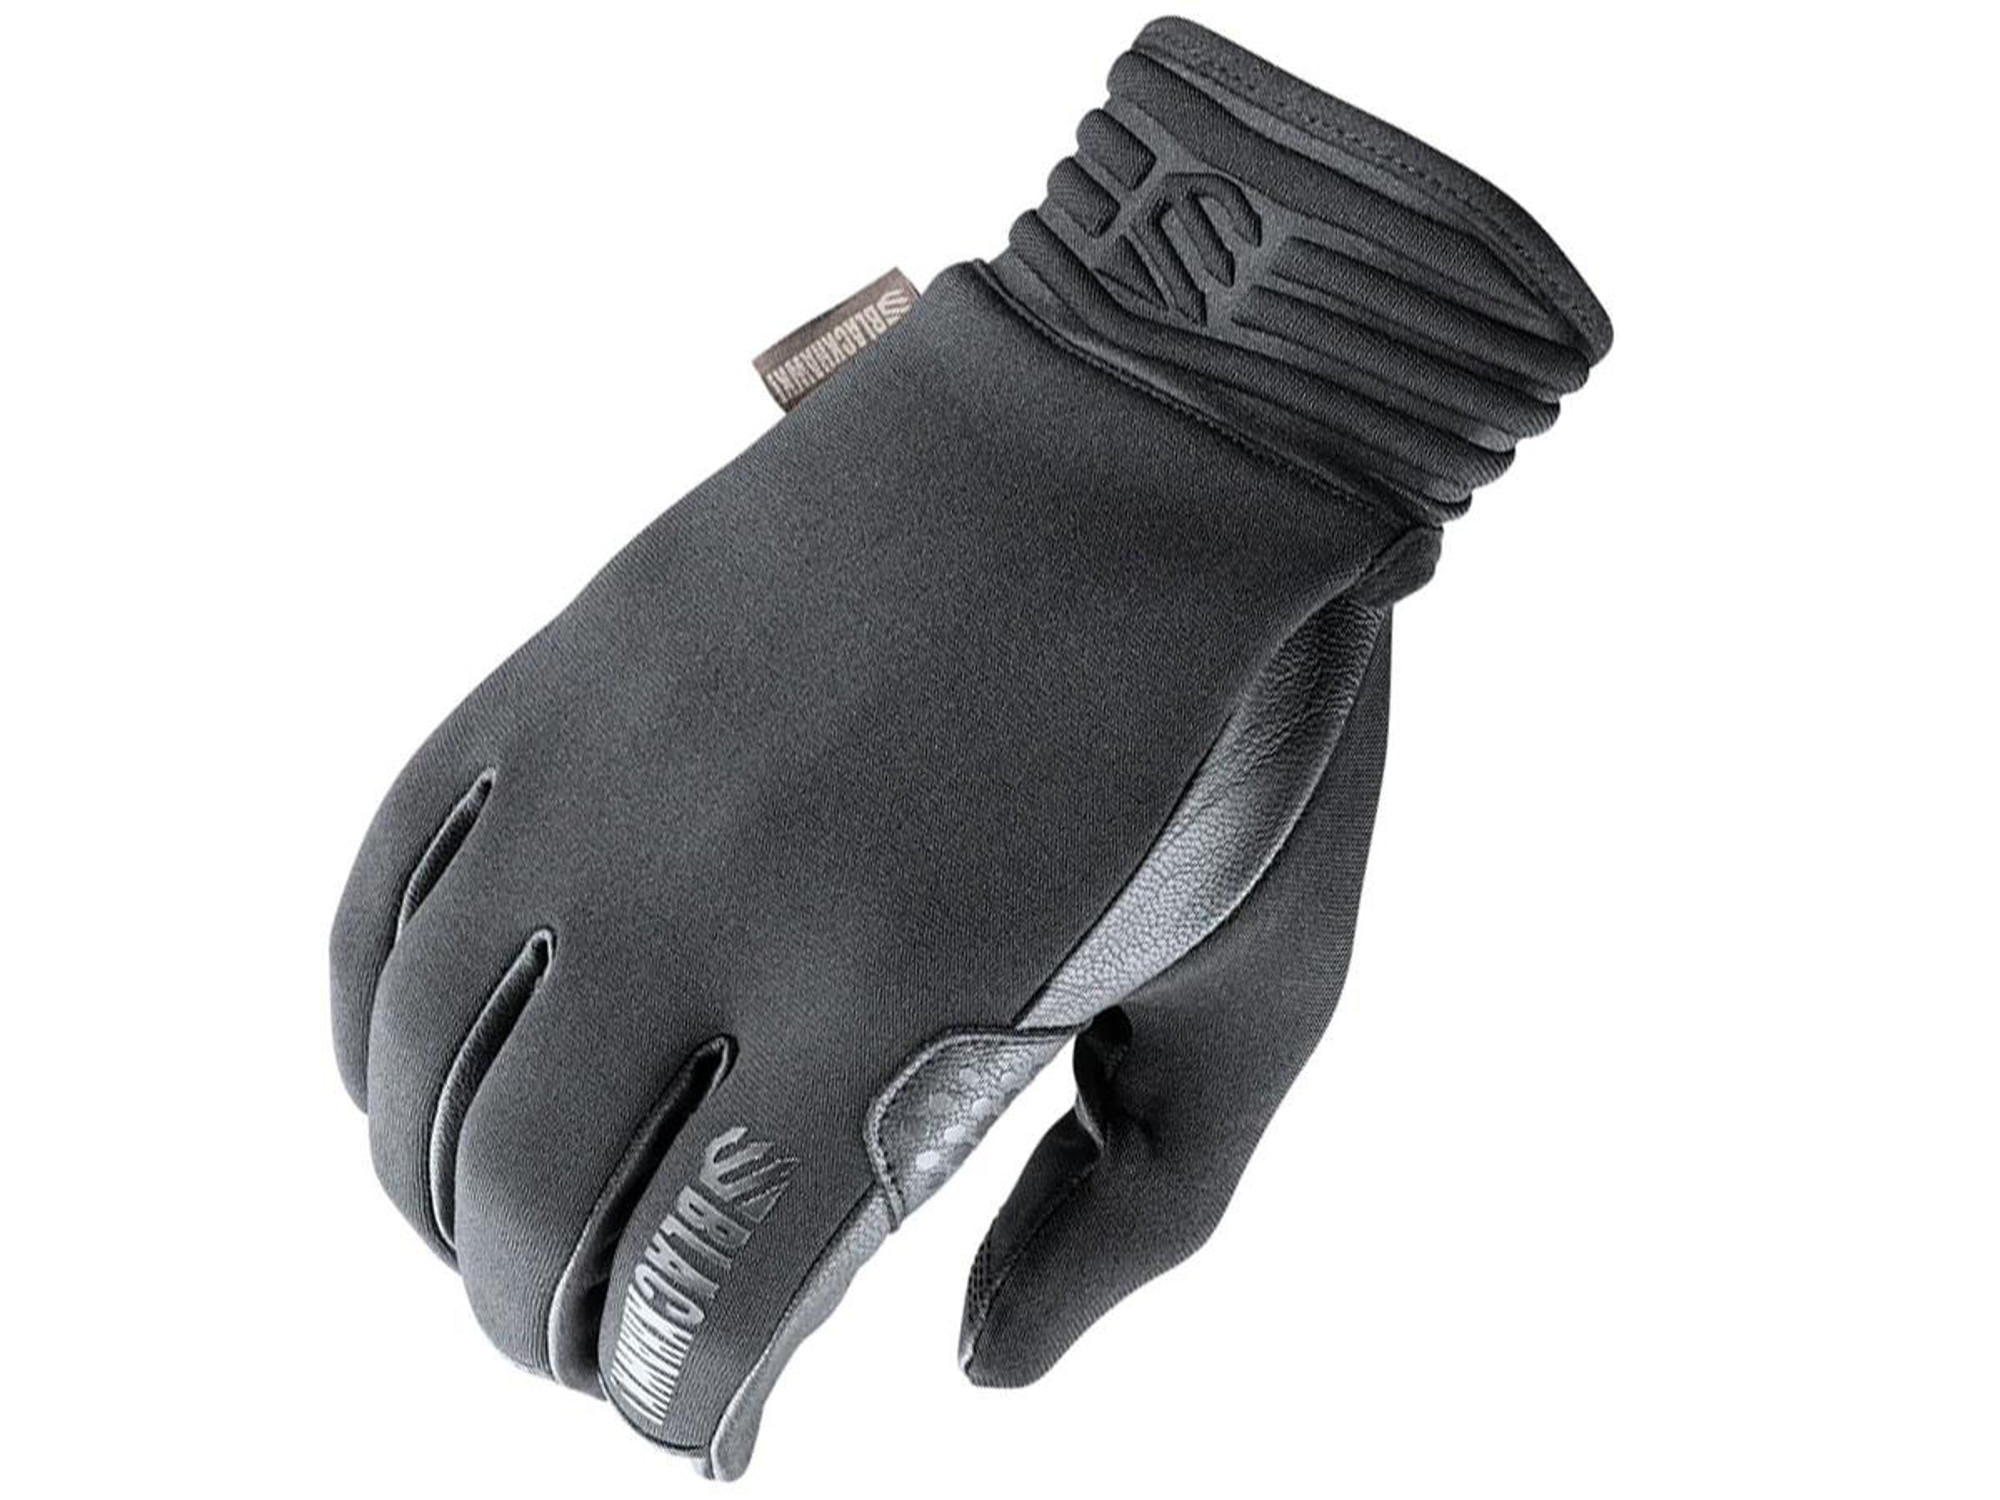 Blackhawk! P.A.T.R.O.L. Elite Glove (Color: Black / Small)